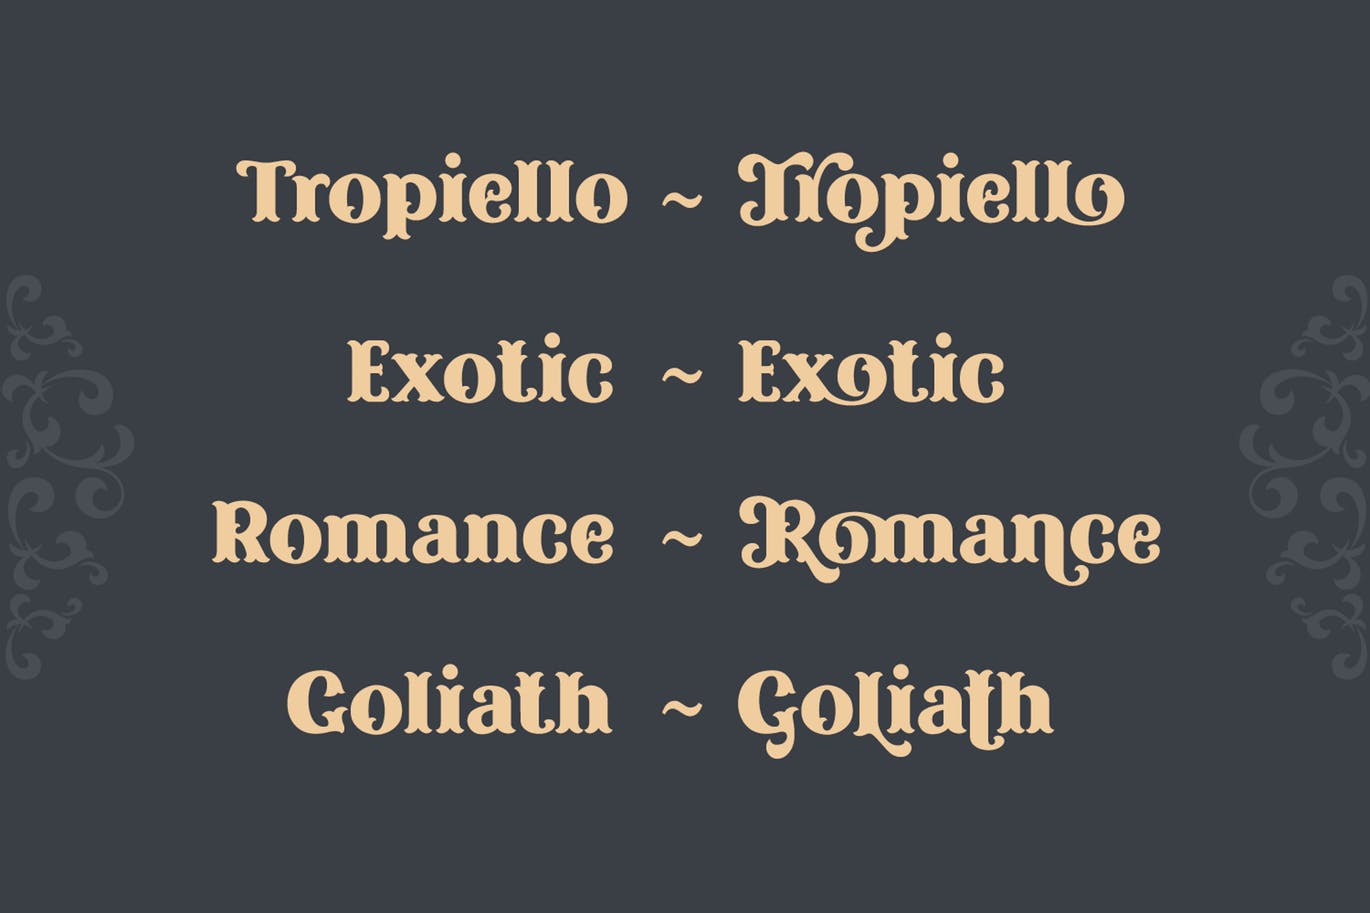 复古风格精美英文衬线装饰字体素材天下精选下载 Tropiello Font插图(4)